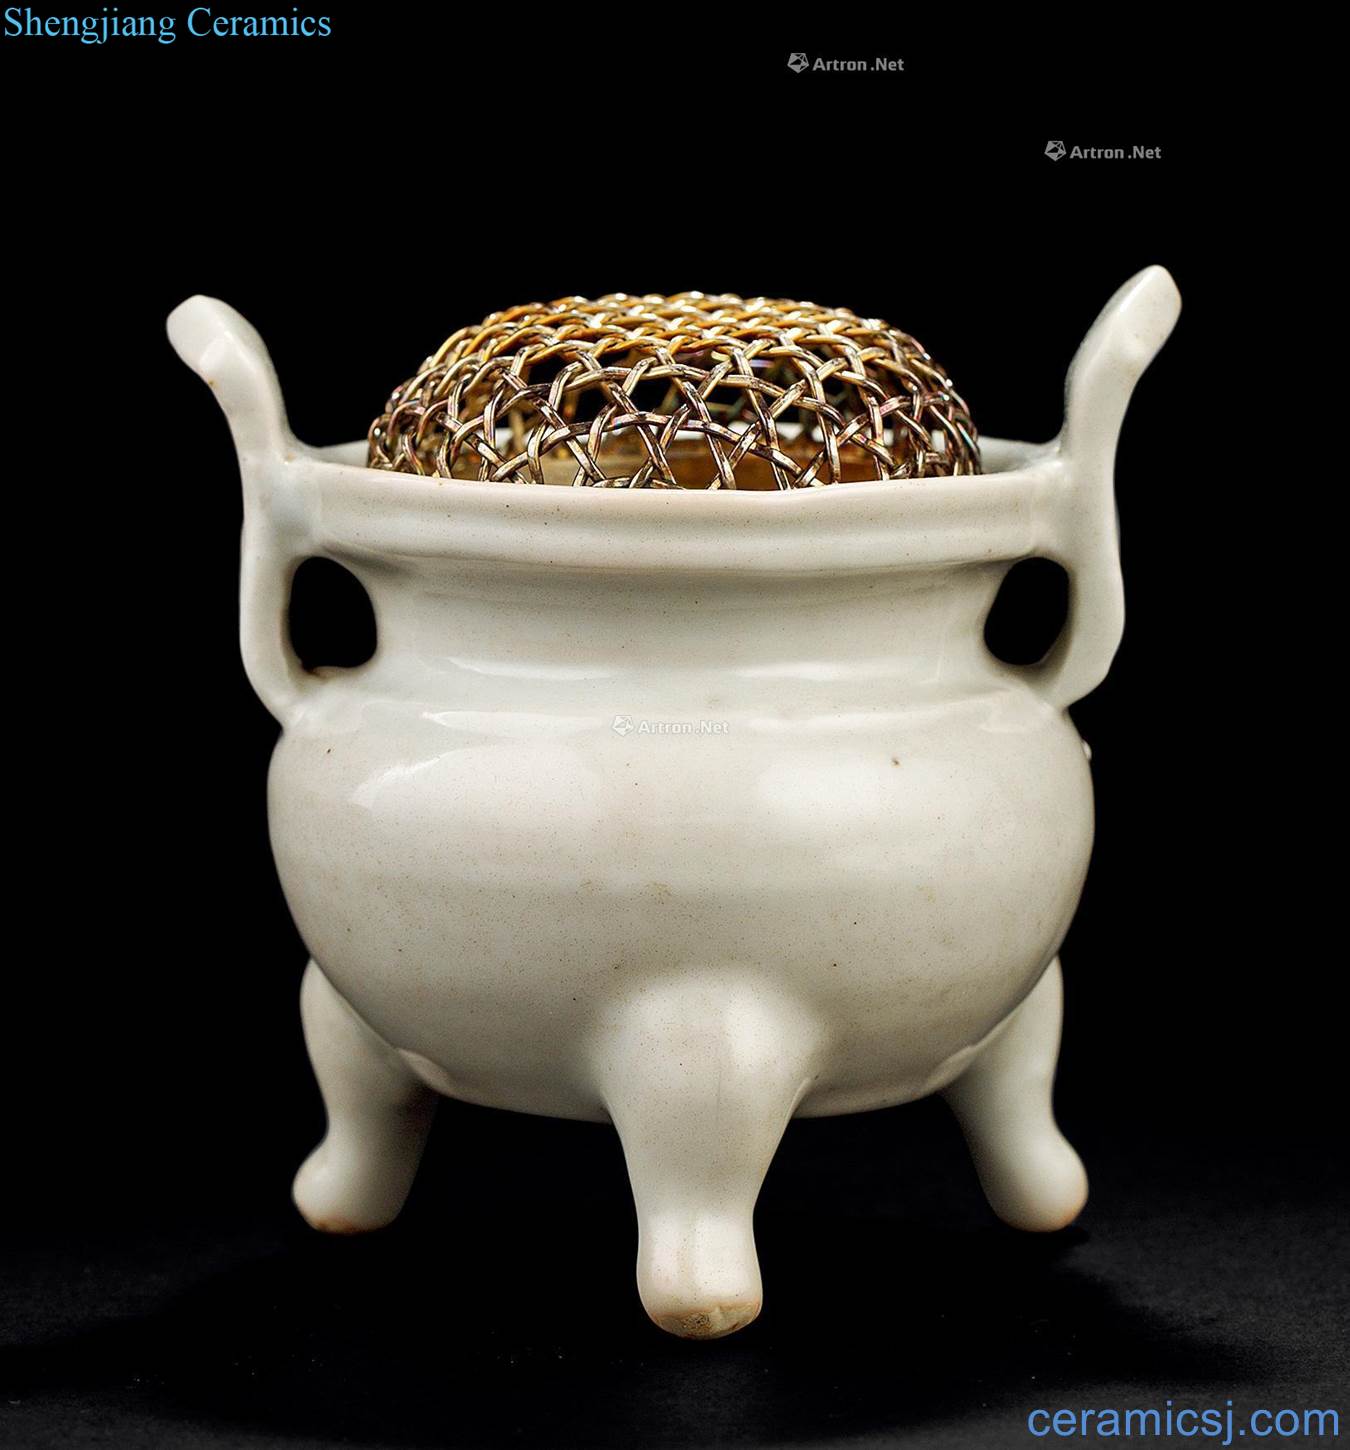 The yuan dynasty (1279-1368), white porcelain ears three-legged censer